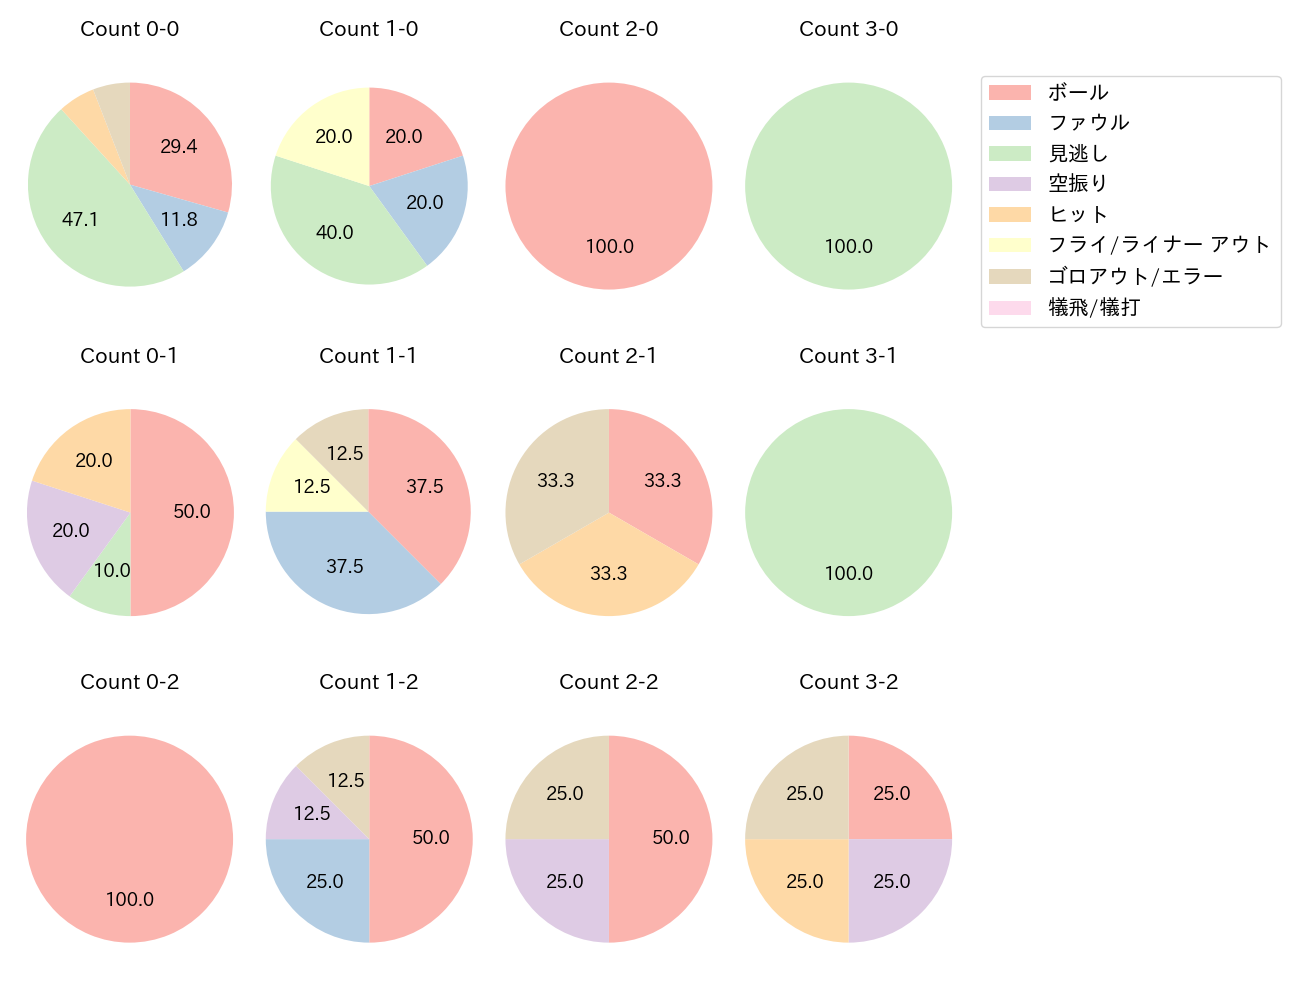 鶴岡 慎也の球数分布(2021年5月)